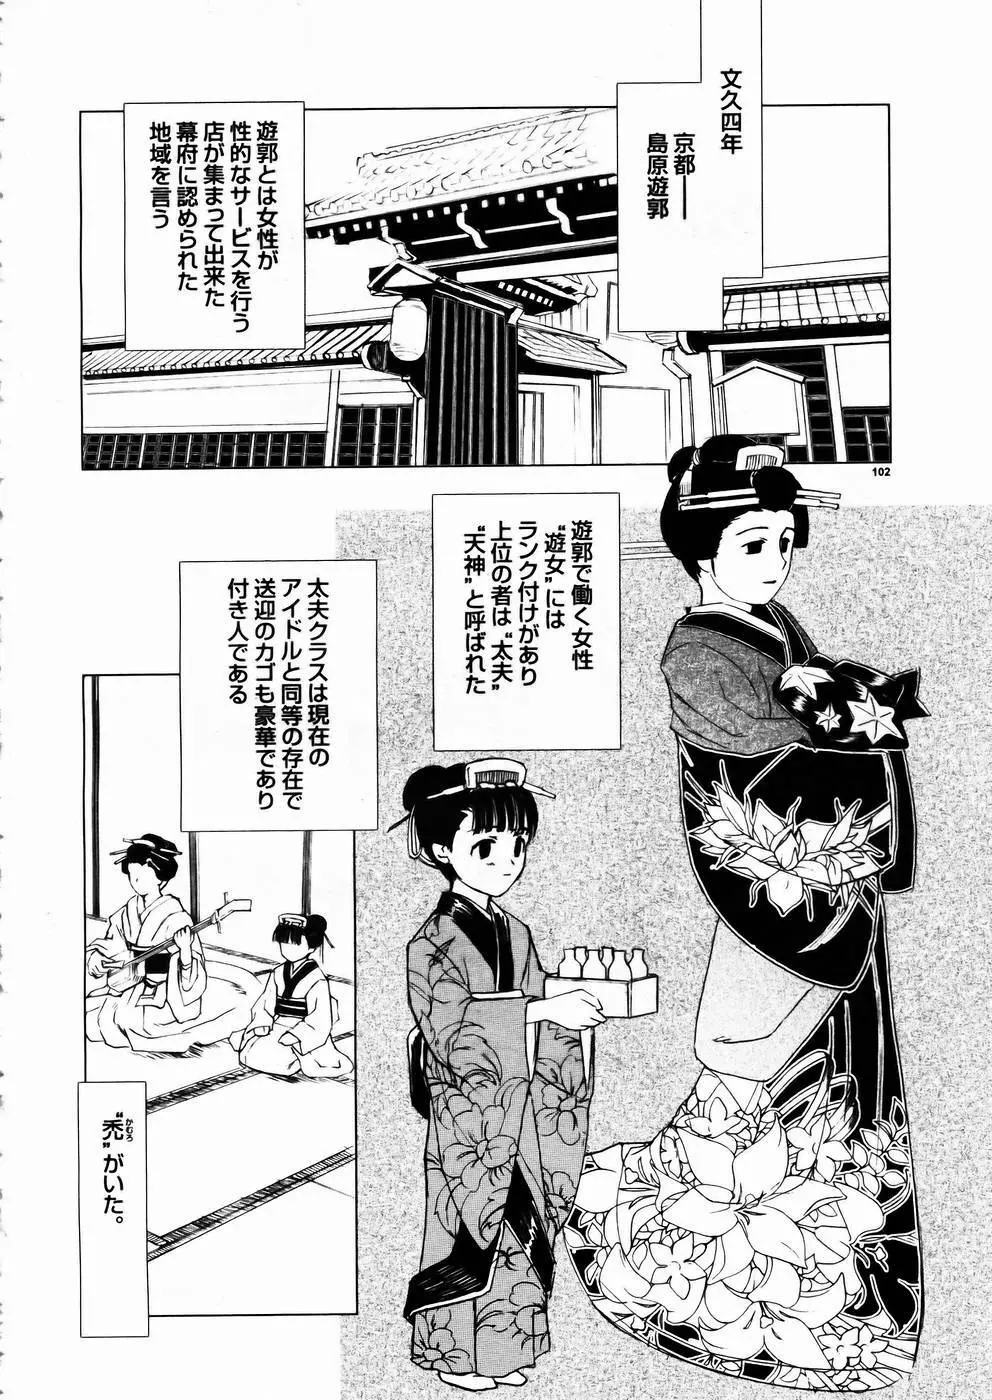 少女剣客凌辱コミック Vol.01 くノ一斬! 99ページ